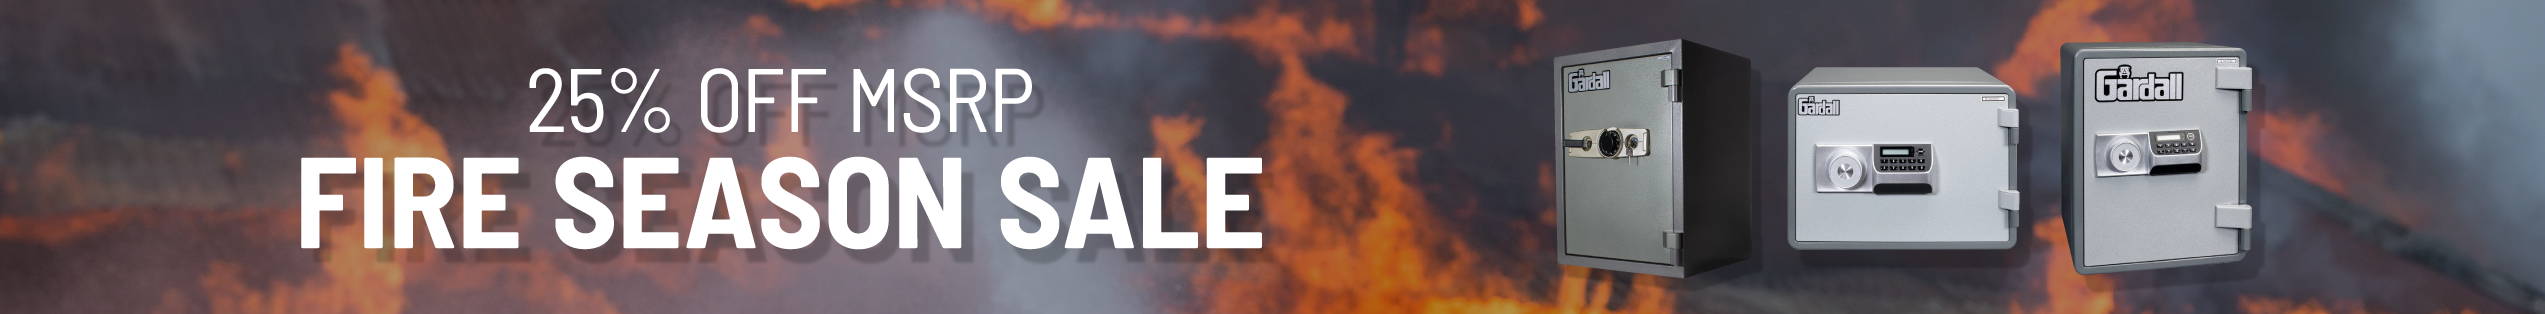 25% off MSRP Fire Season Sale